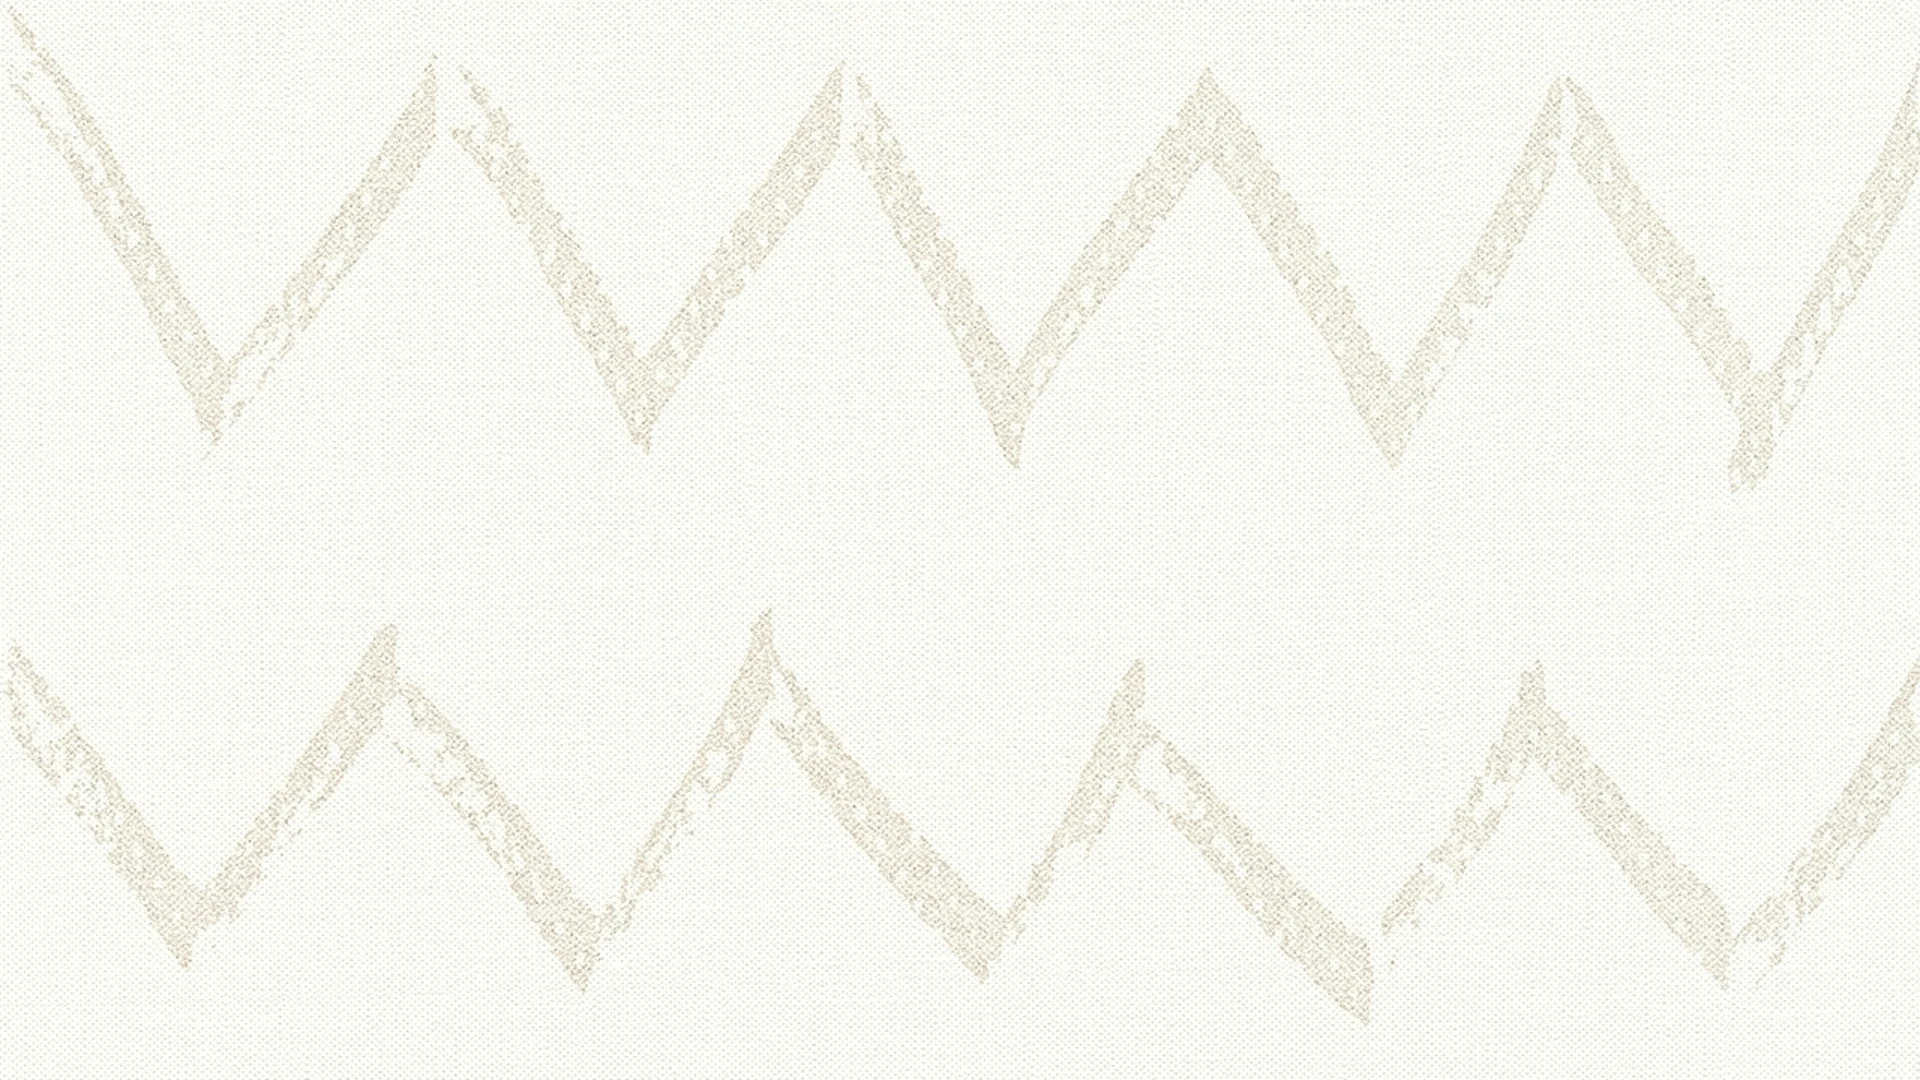 Vinyltapete weiß Modern Klassisch Streifen Designdschungel 2 by Laura N. 741